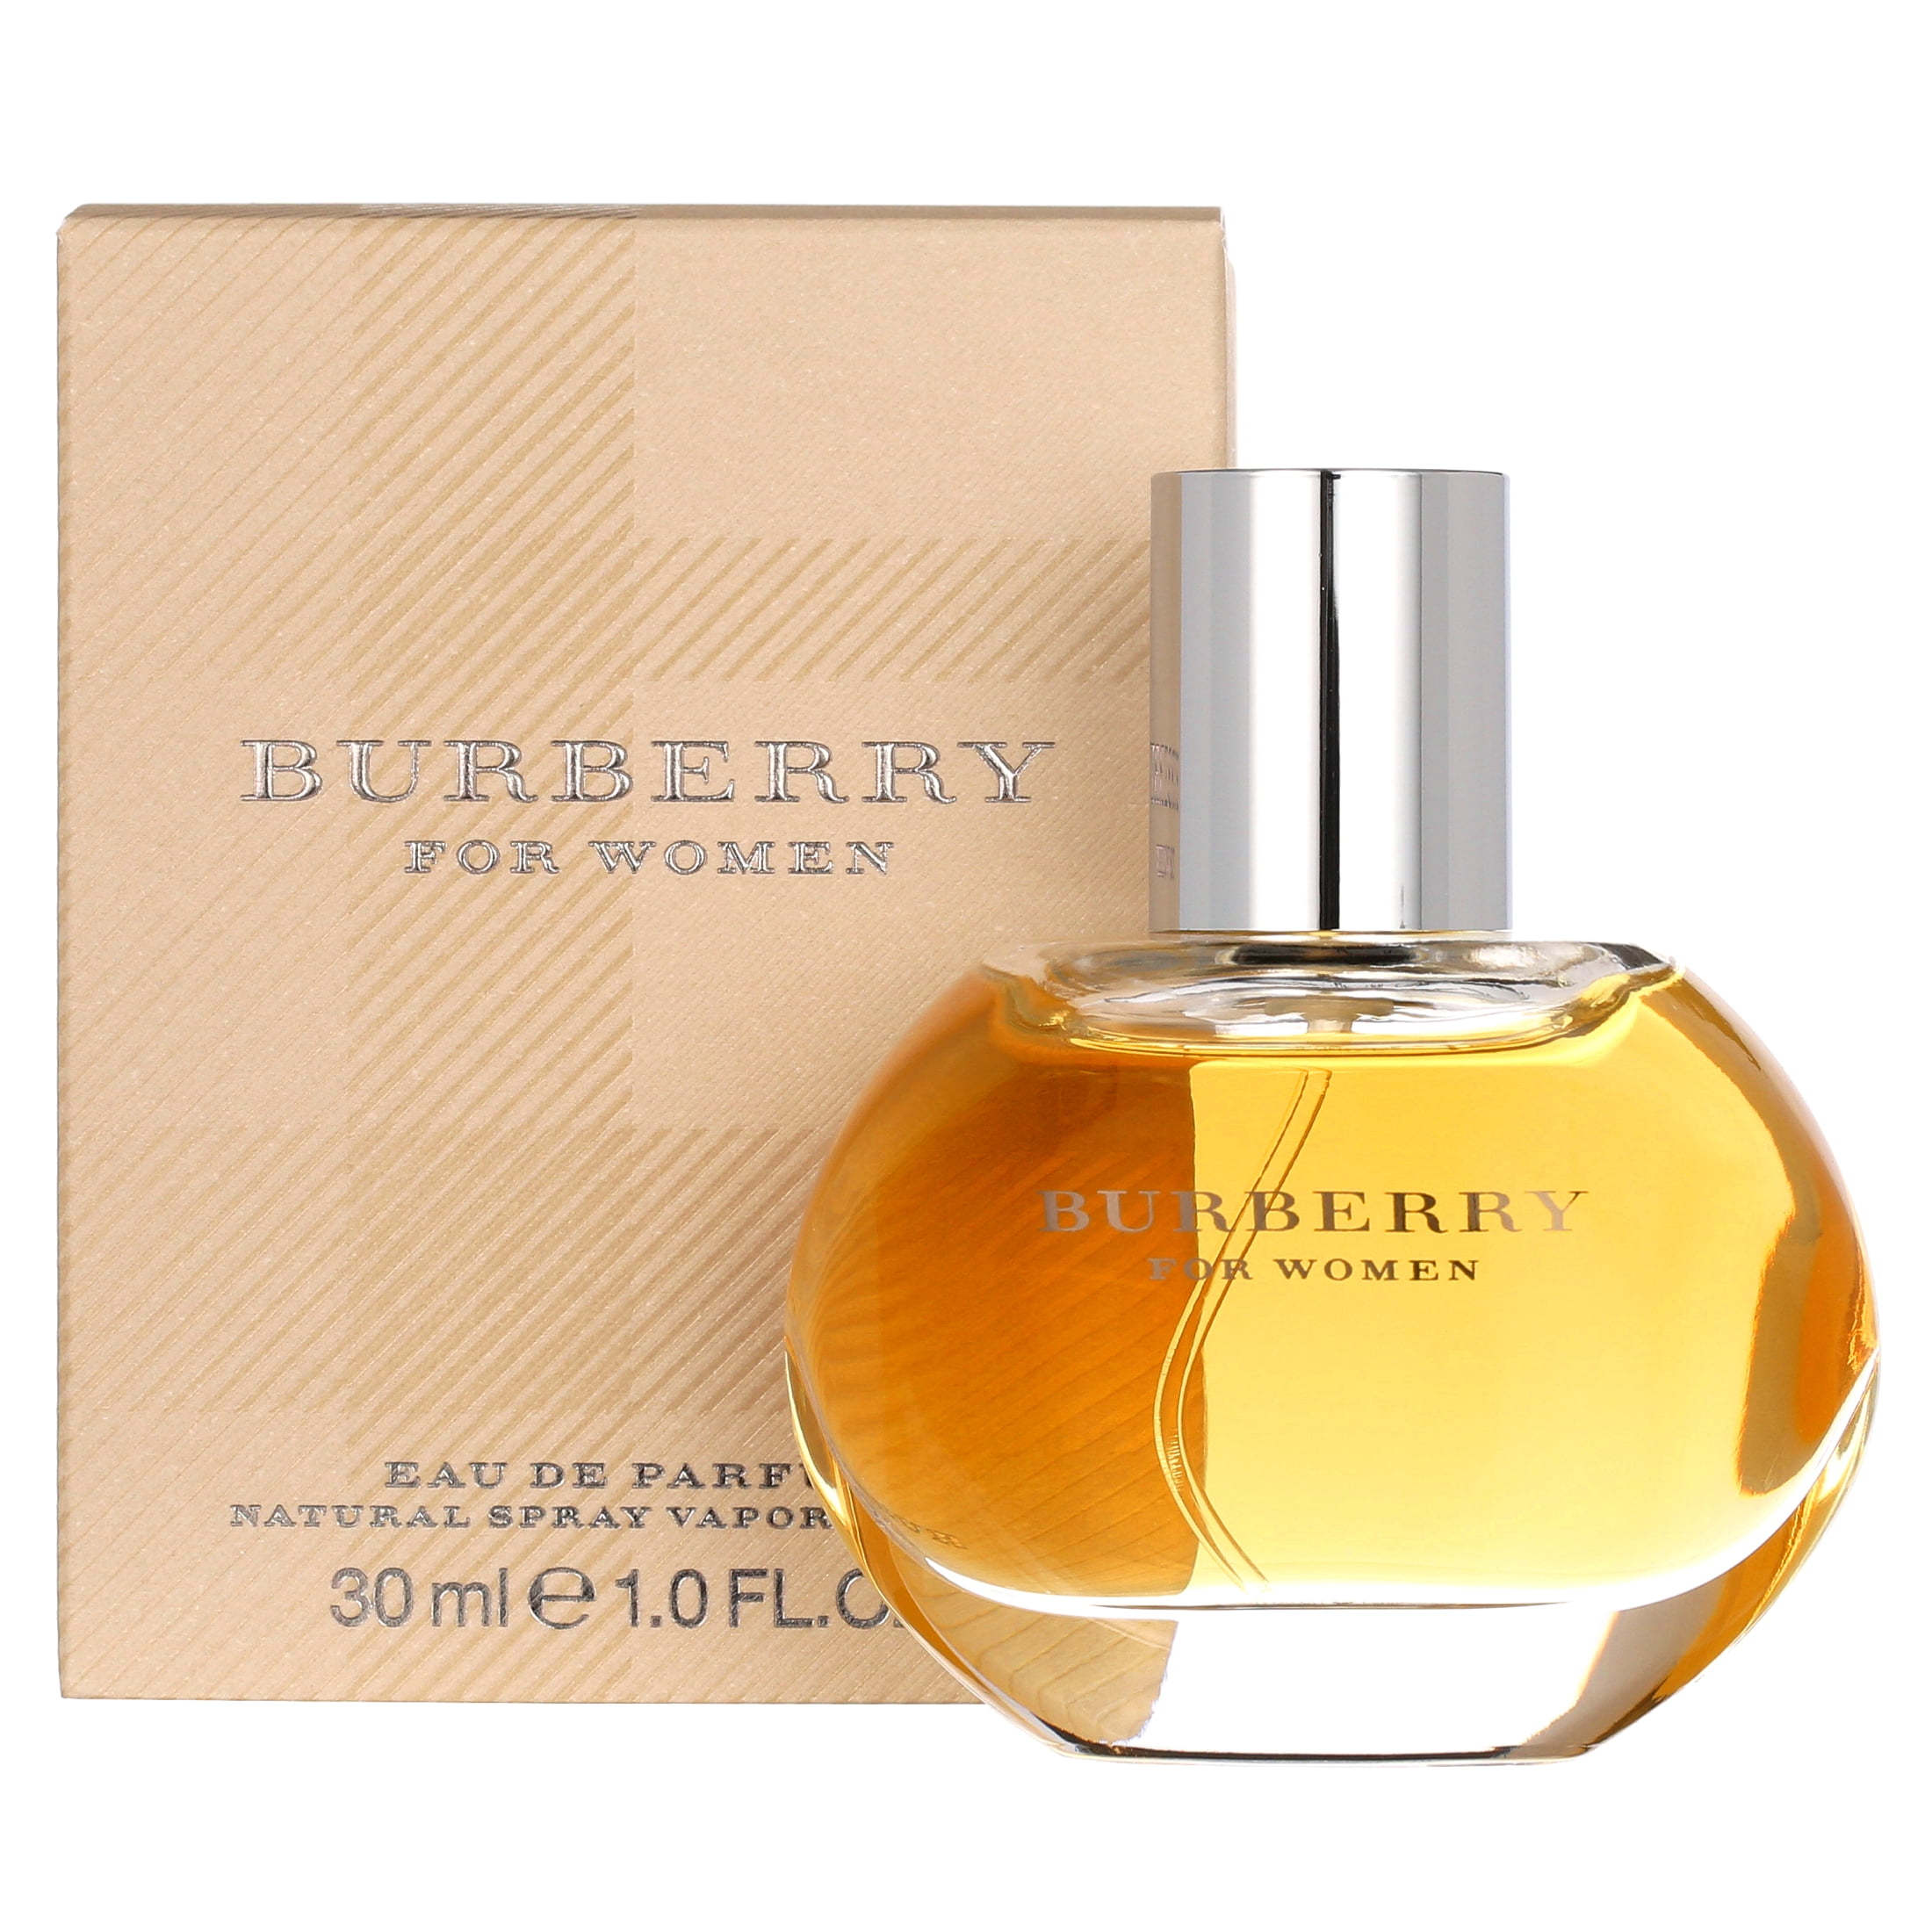 Burberry by Burberry Eau De Parfum Spray - 1 fl oz bottle